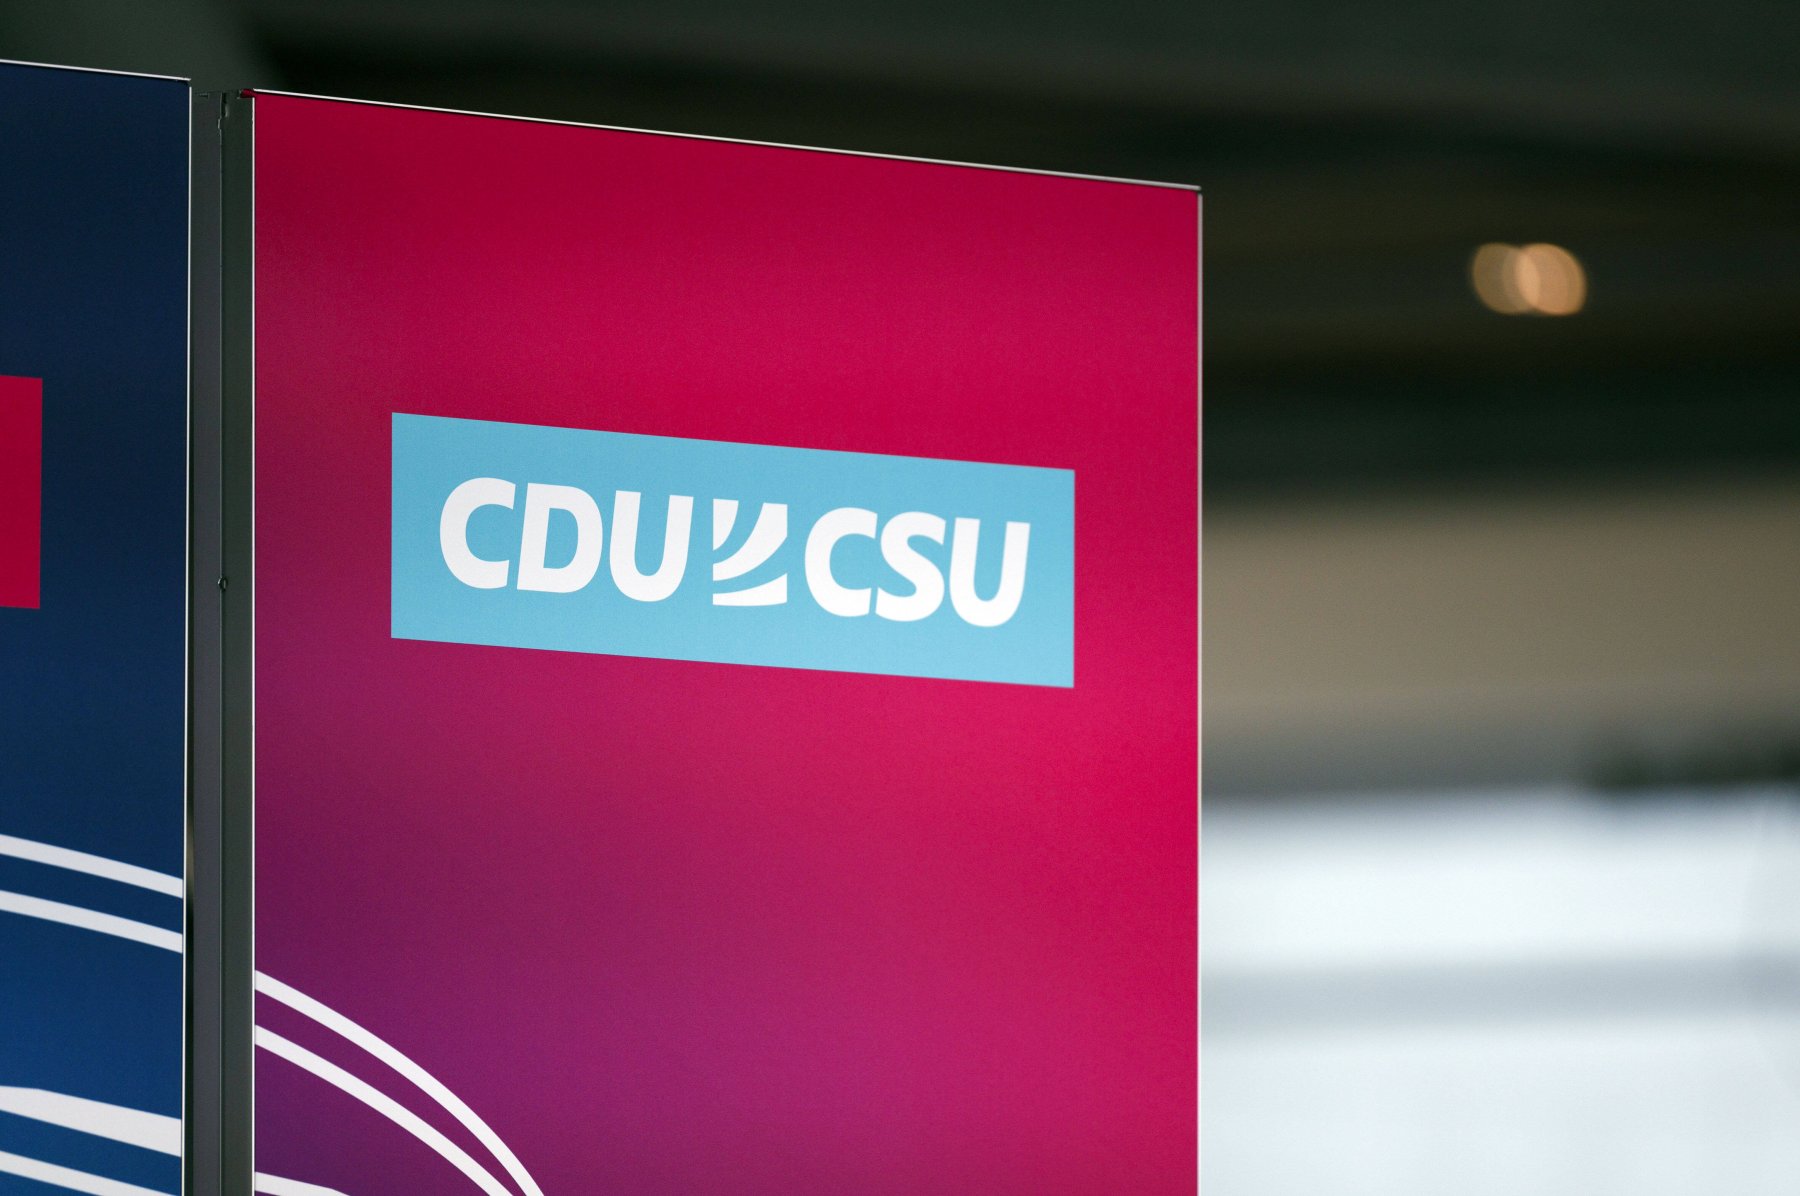 Das Wirtschaftsprogramm von CDU und CSU ist wie ein Immobilienprospekt, in dem ein heruntergekommenes Haus in schlechter Lage als Liebhaberobjekt in charmanter Umgebung beschrieben wird.